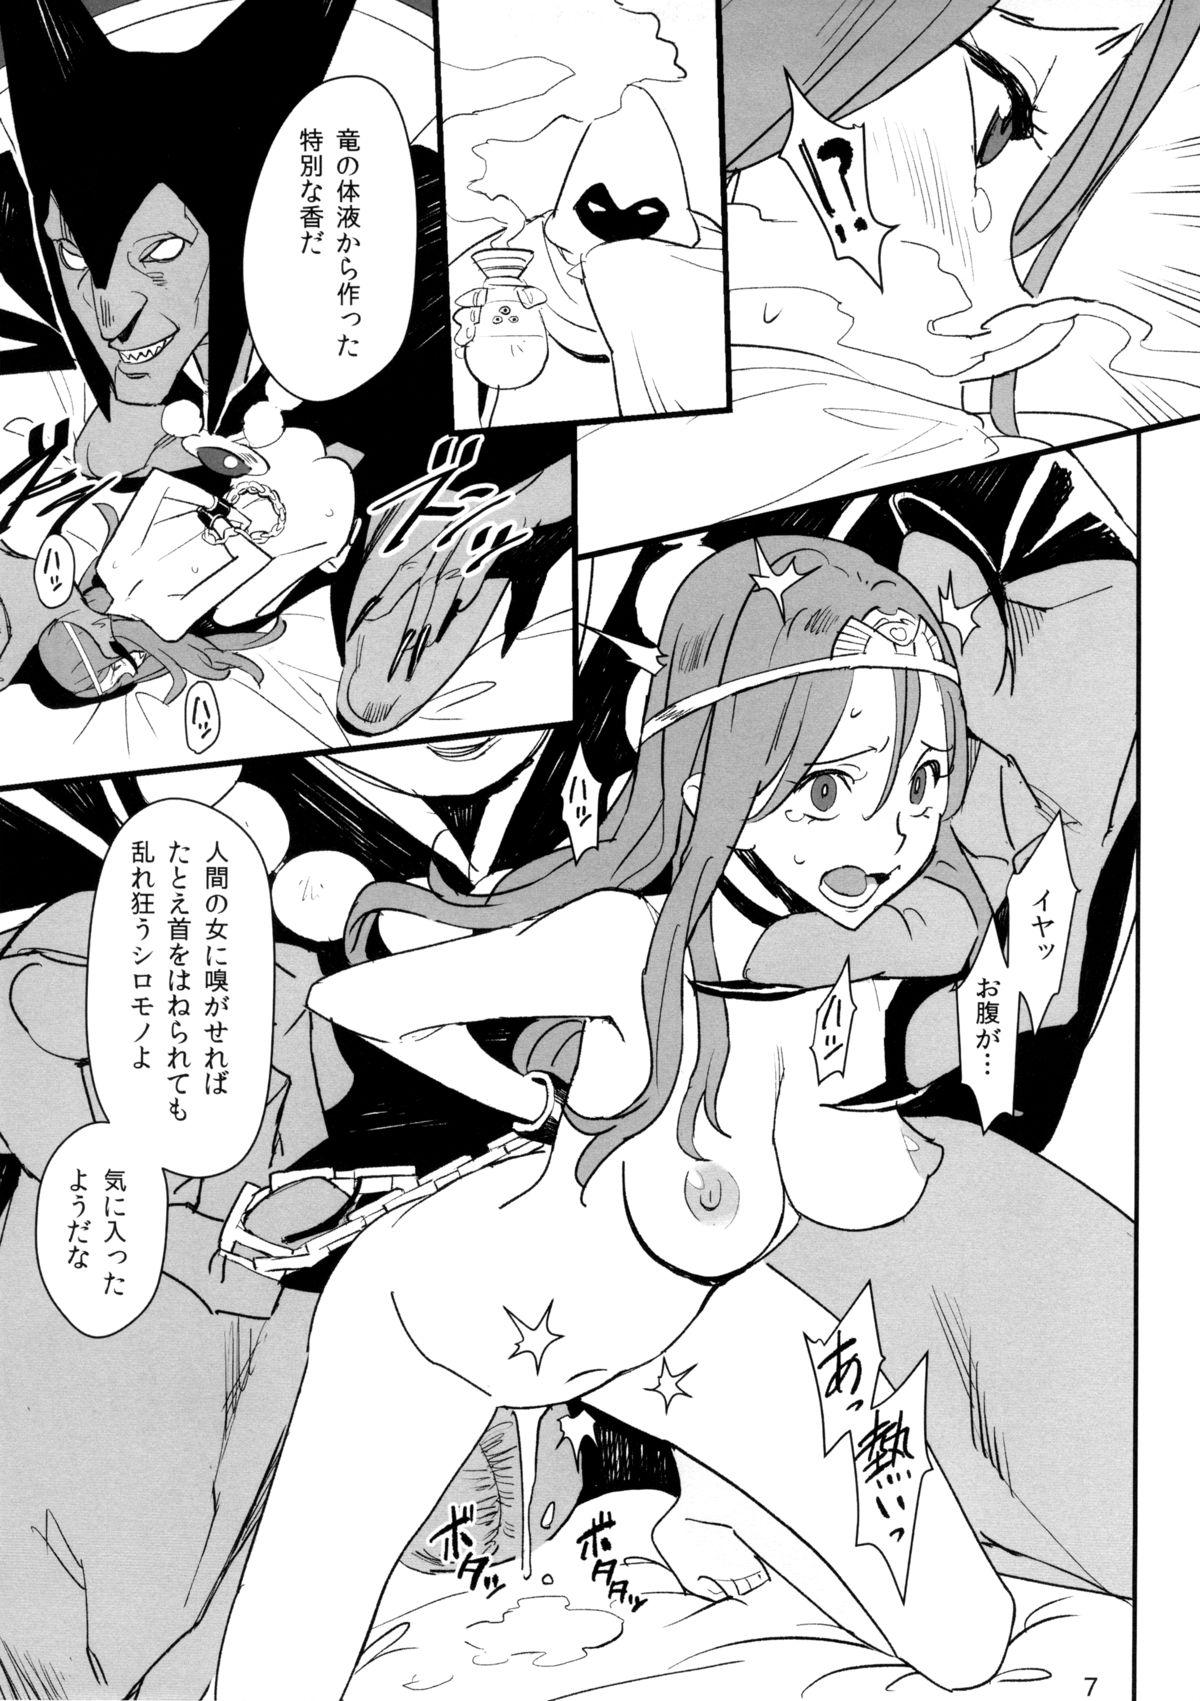 Doublepenetration Ryuu no Su - Dragon Nest - Dragon quest i Sem Camisinha - Page 6